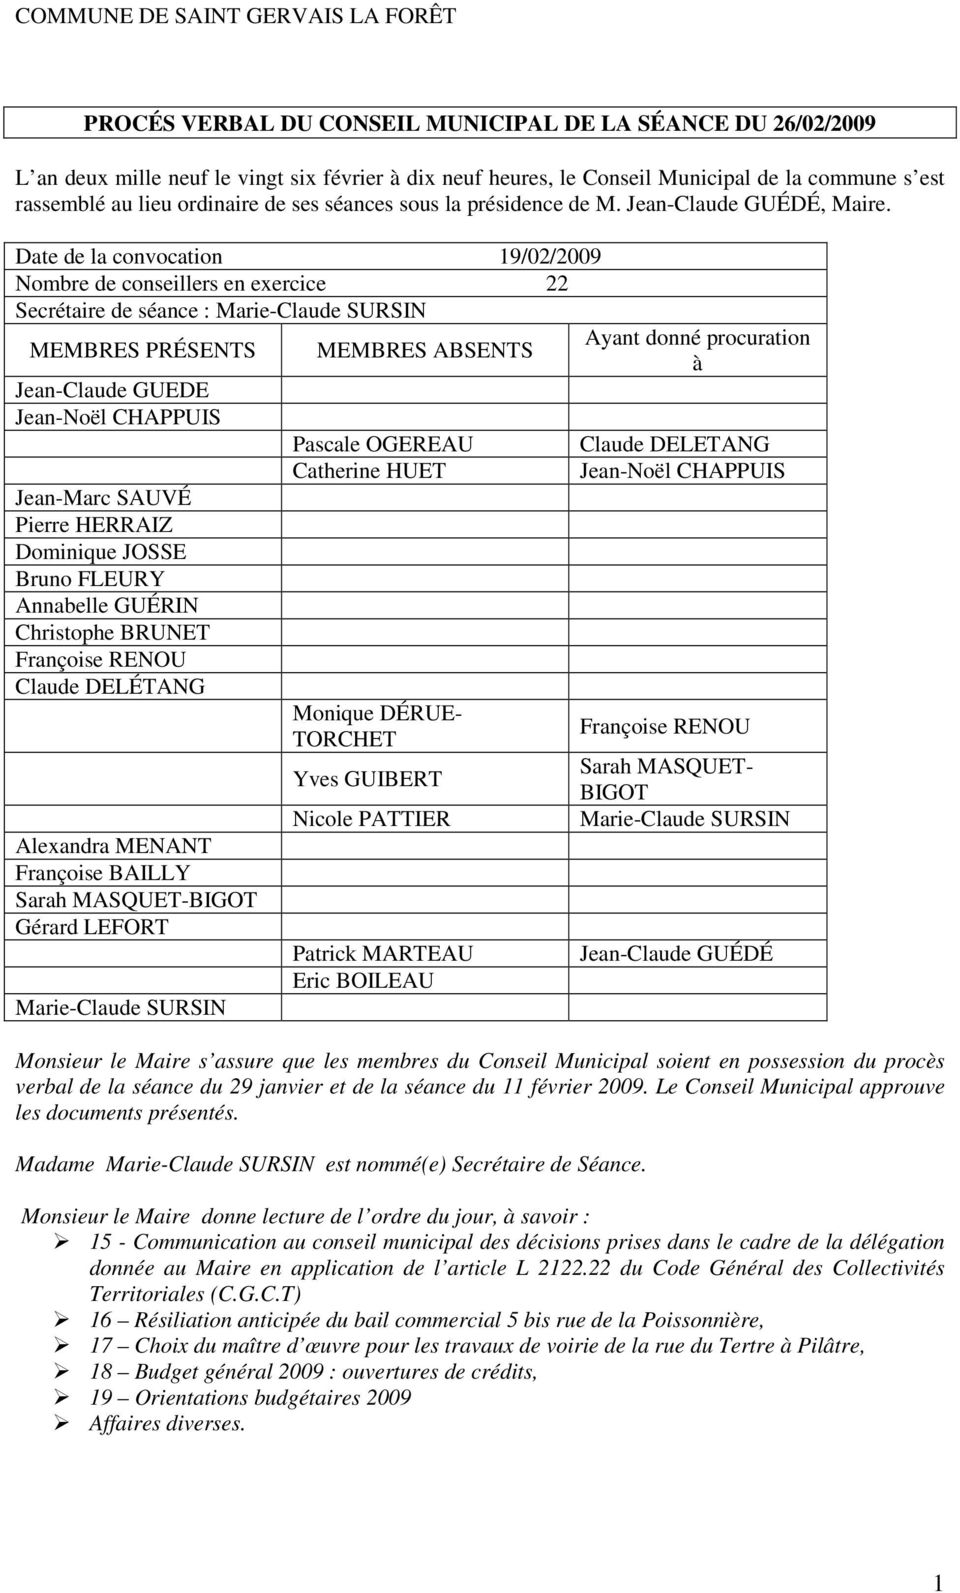 Date de la convocation 19/02/2009 Nombre de conseillers en exercice 22 Secrétaire de séance : Marie-Claude SURSIN MEMBRES PRÉSENTS Jean-Claude GUEDE Jean-Noël CHAPPUIS Jean-Marc SAUVÉ Pierre HERRAIZ